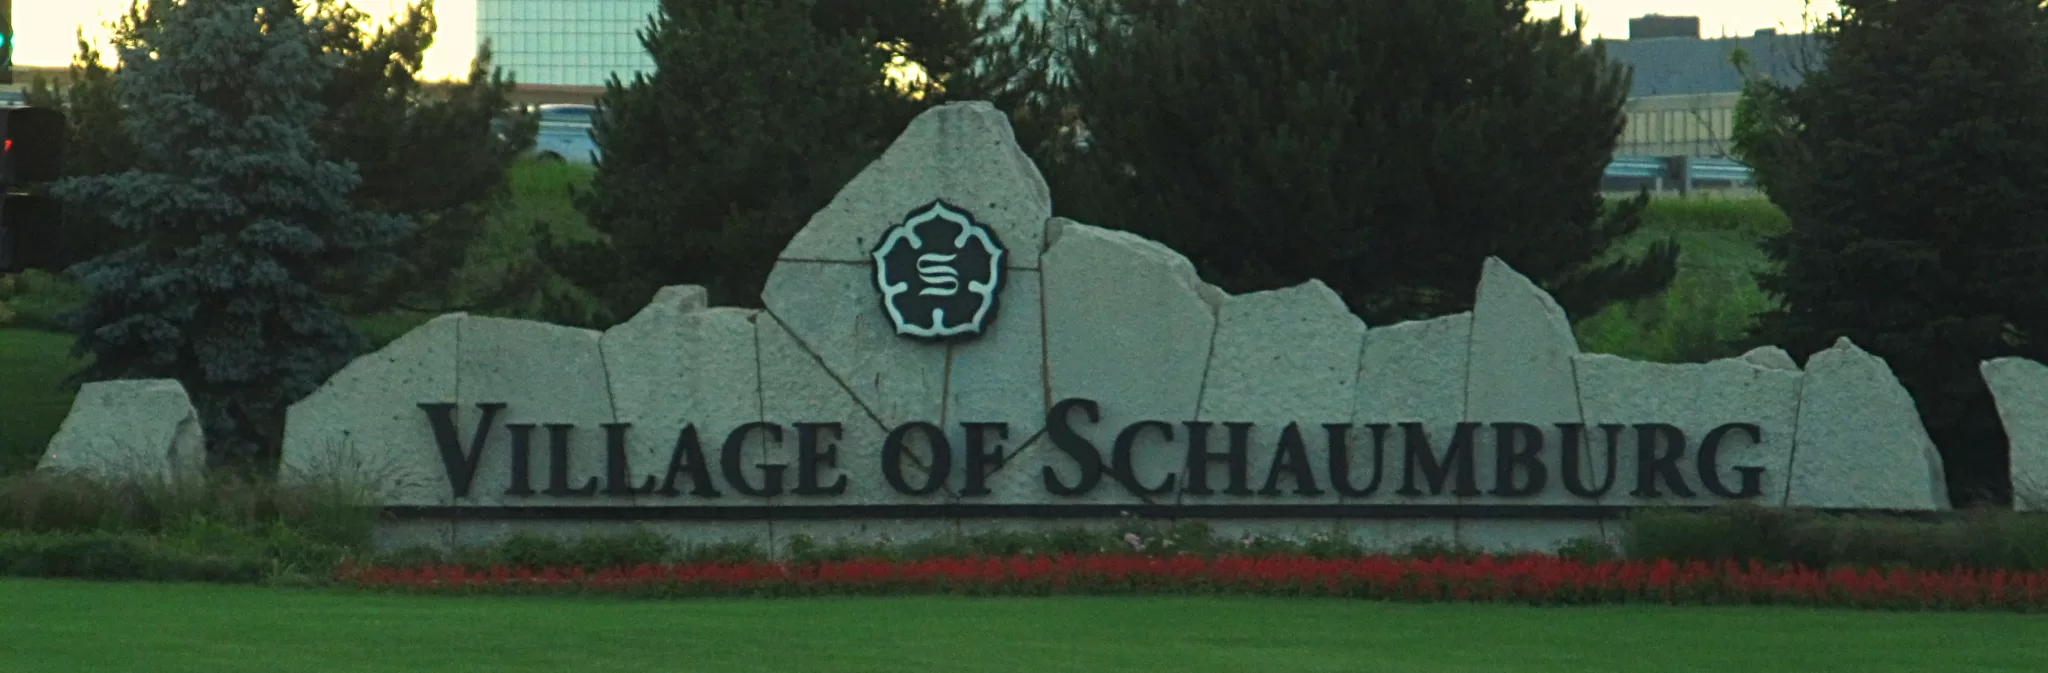 Village of Schaumburg Sign